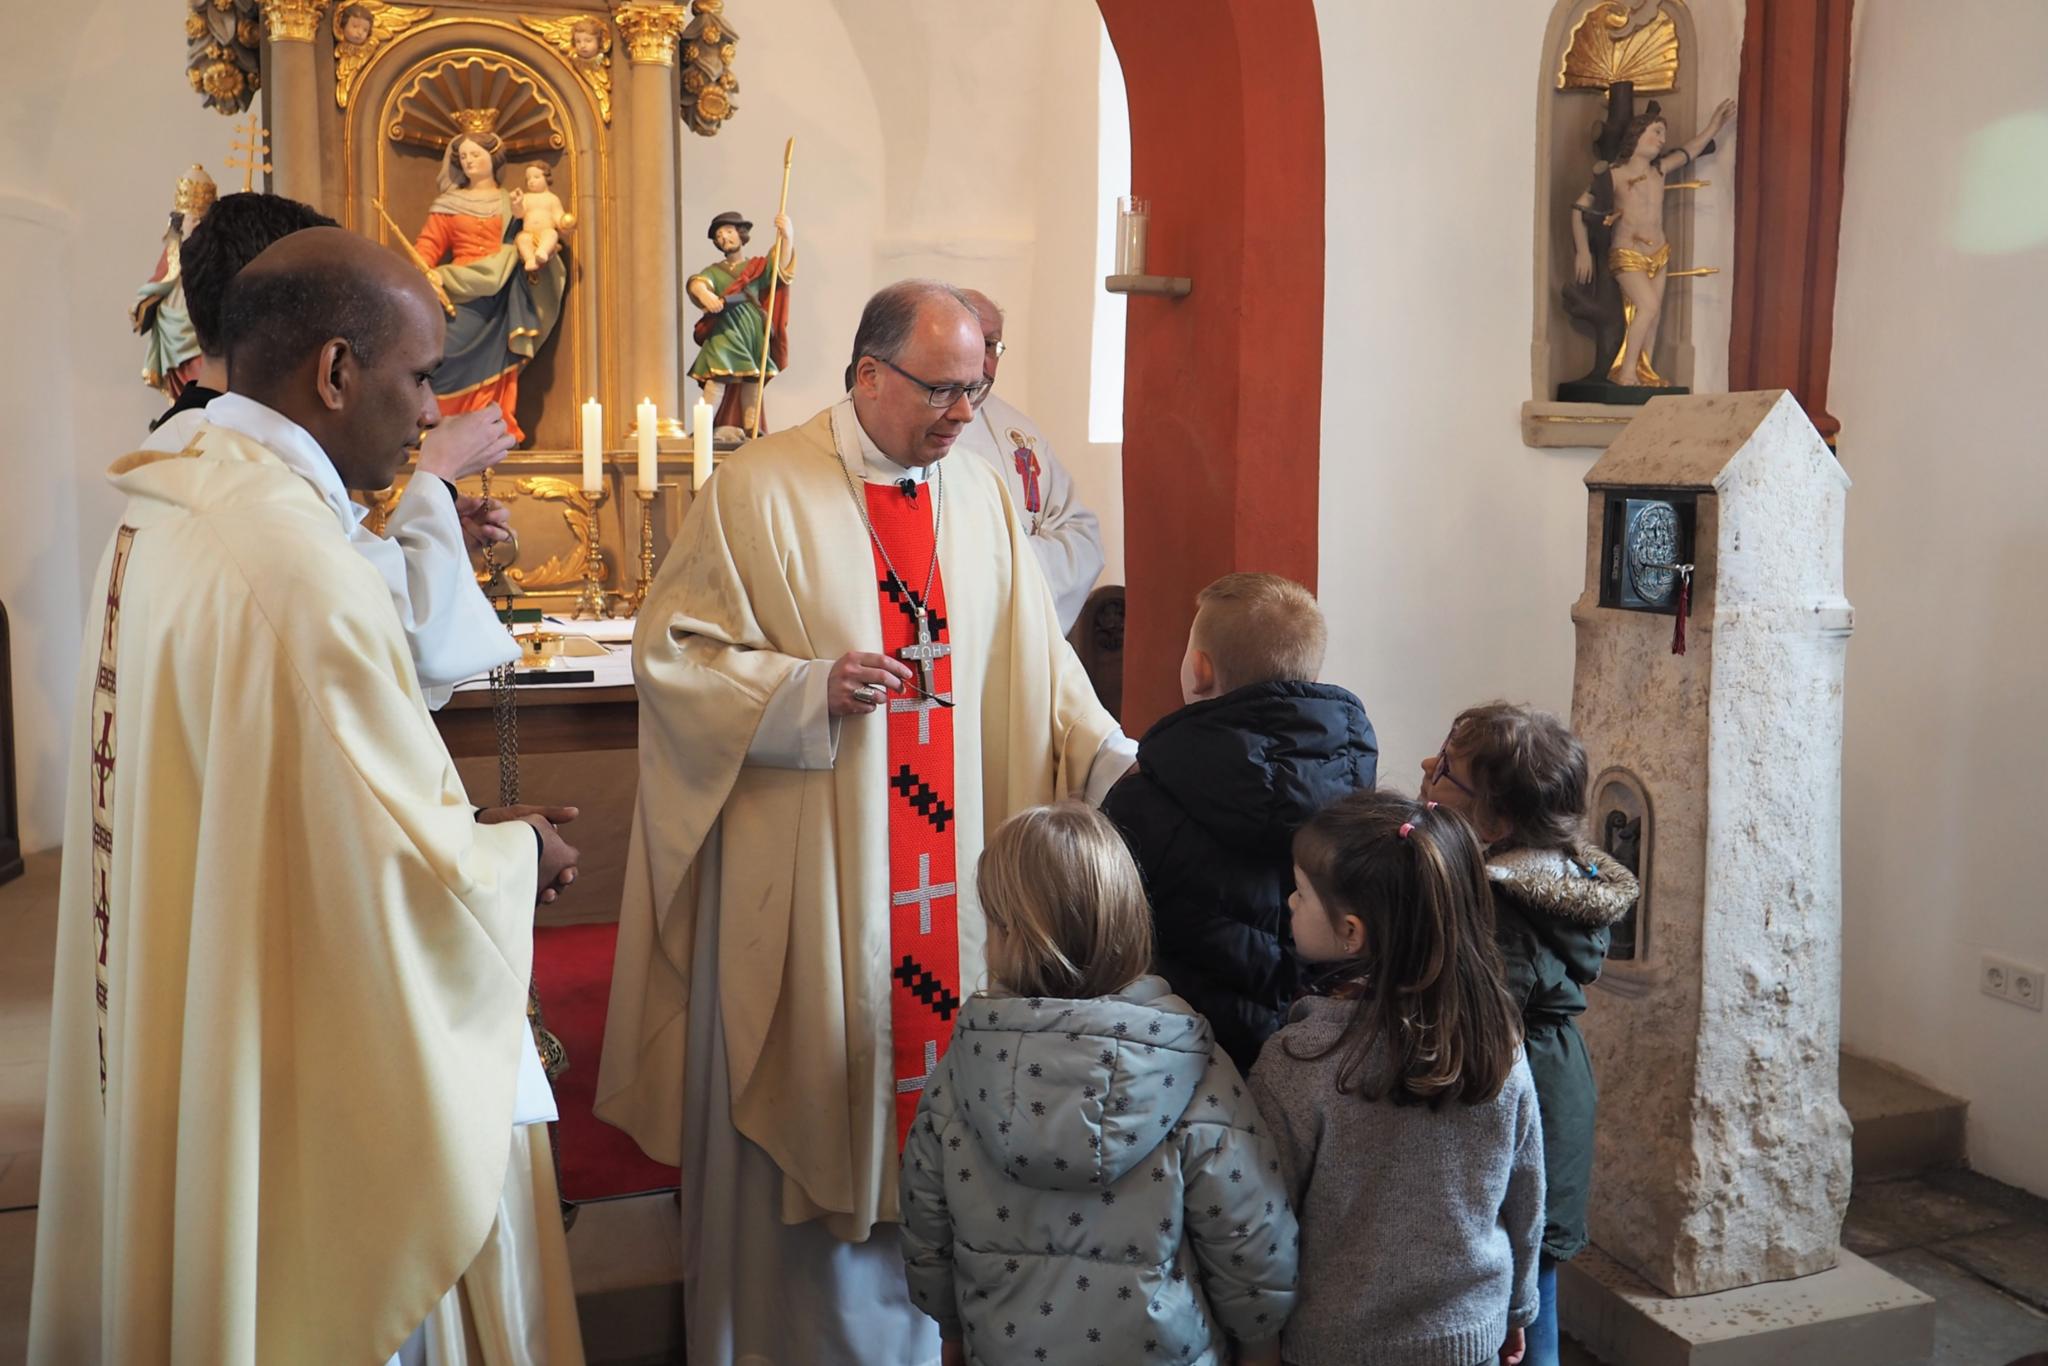 Bischof Ackermann (Mitte) bereitet mit Kindern aus der Gemeinde den Weihrauch vor, um den Tabernakel in der Stele (rechts) zu segnen.